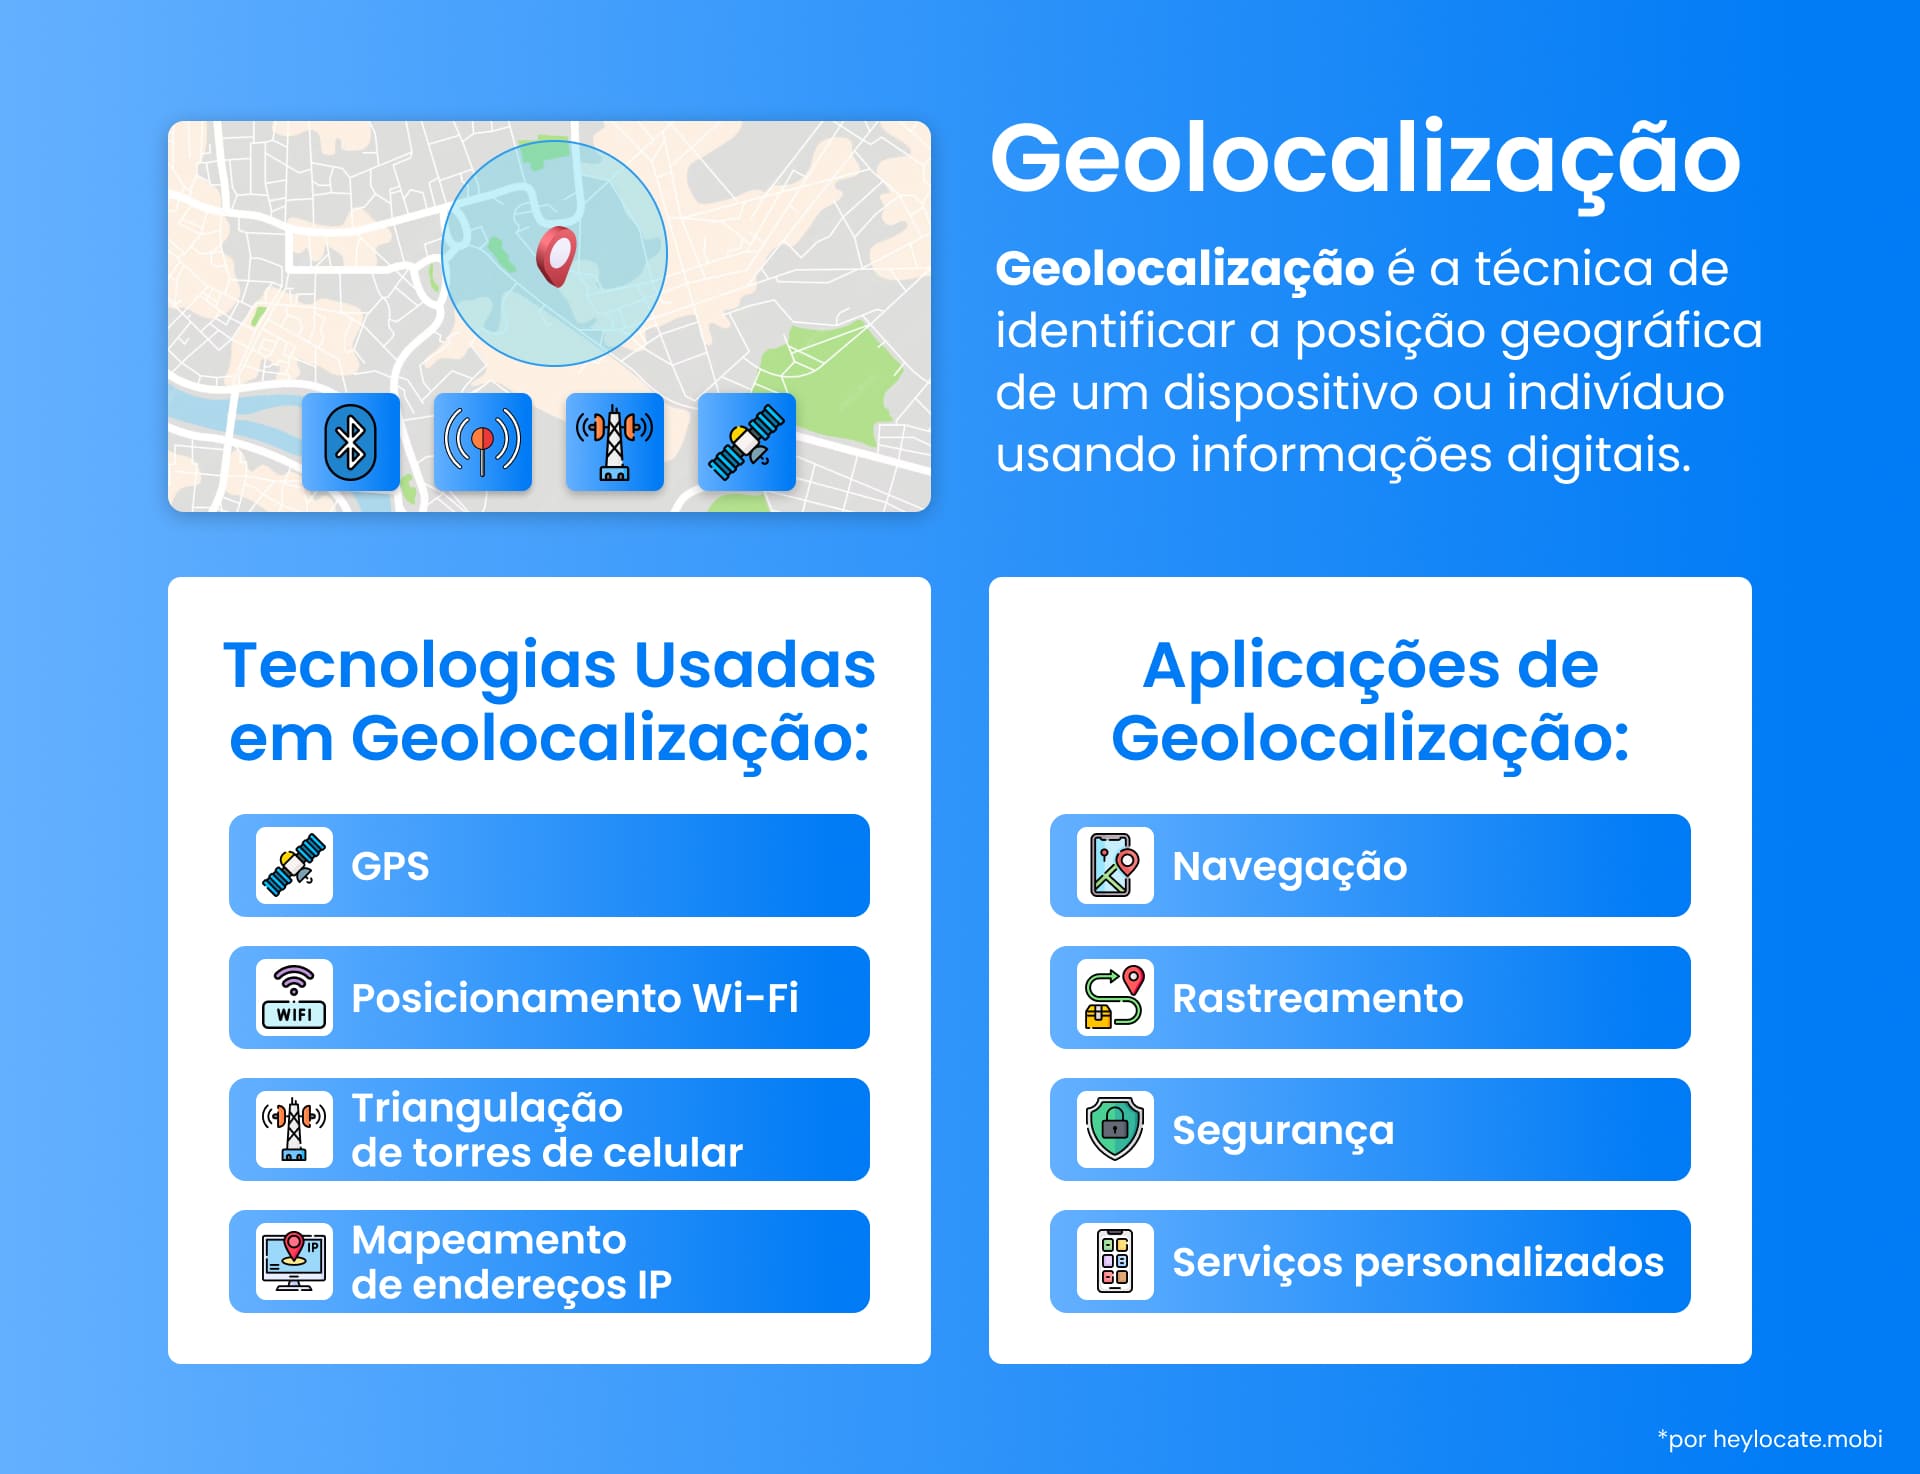 Infográfico retratando a tecnologia de geolocalização e suas aplicações